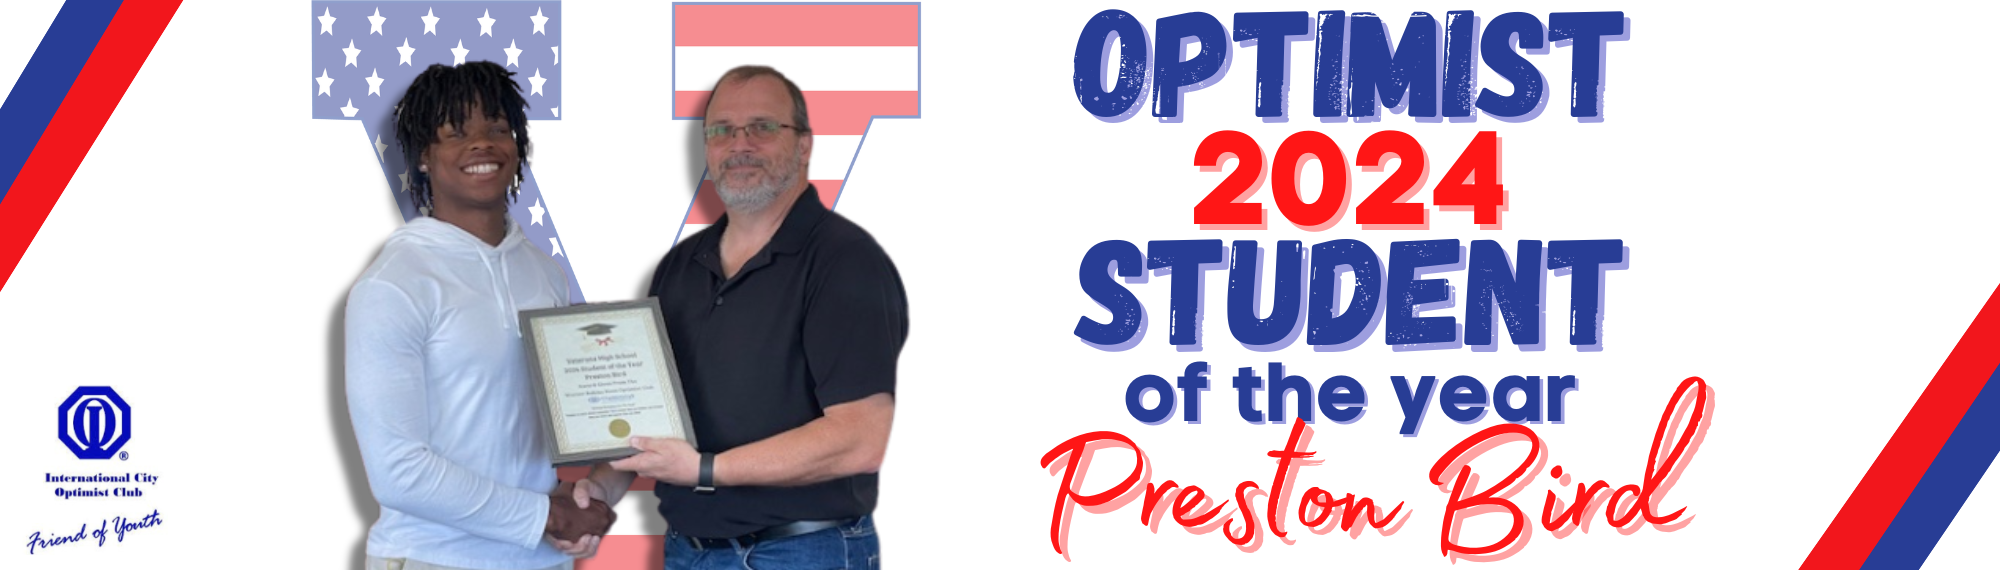 Optimist Student of the Year 2024 Preston Bird